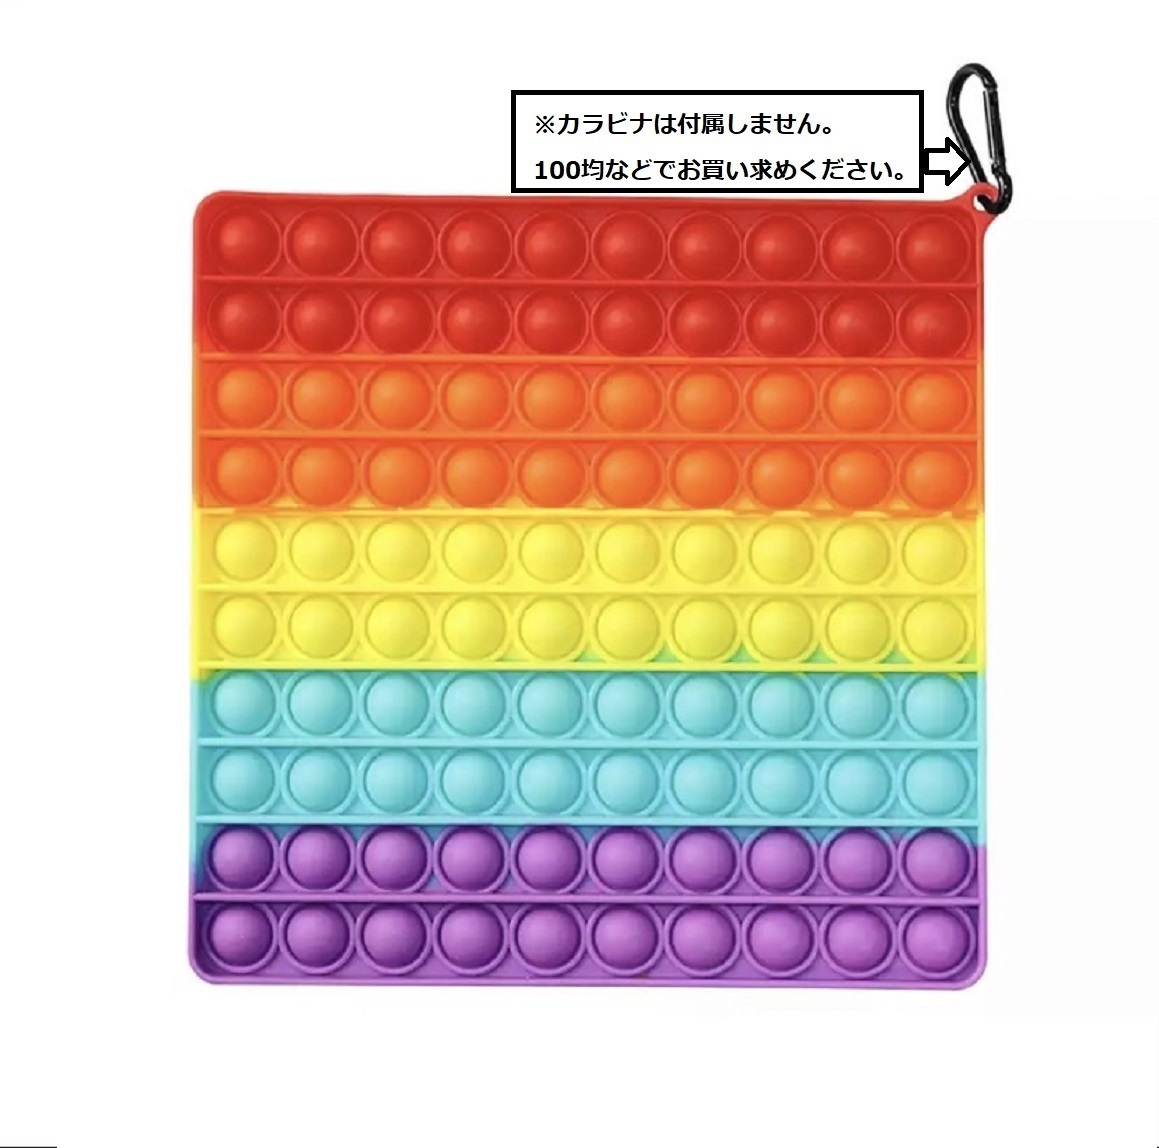 でかいドデカ　プッシュポップ バブル ハート型 虹色 スクイーズ 知育玩具 プチプチ とにかく大きい 無毒環境に優しいシリコン素材を使用